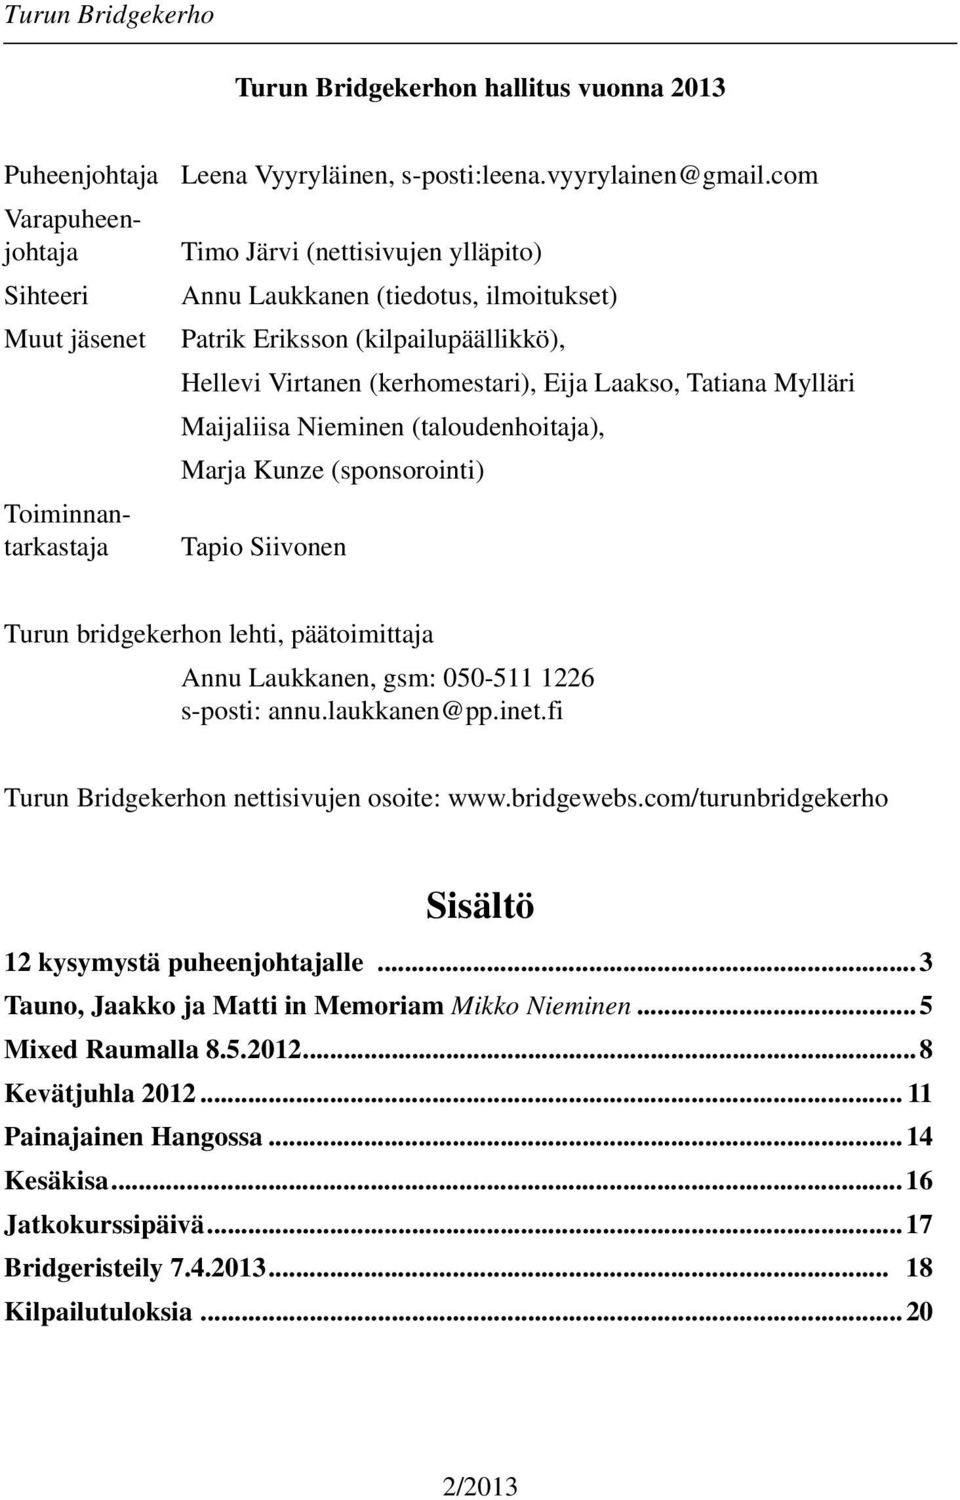 (taloudenhoitaja), Marja Kunze (sponsorointi) Tapio Siivonen Turun bridgekerhon lehti, päätoimittaja Annu Laukkanen, gsm: 050-511 1226 s-posti: annu.laukkanen@pp.inet.